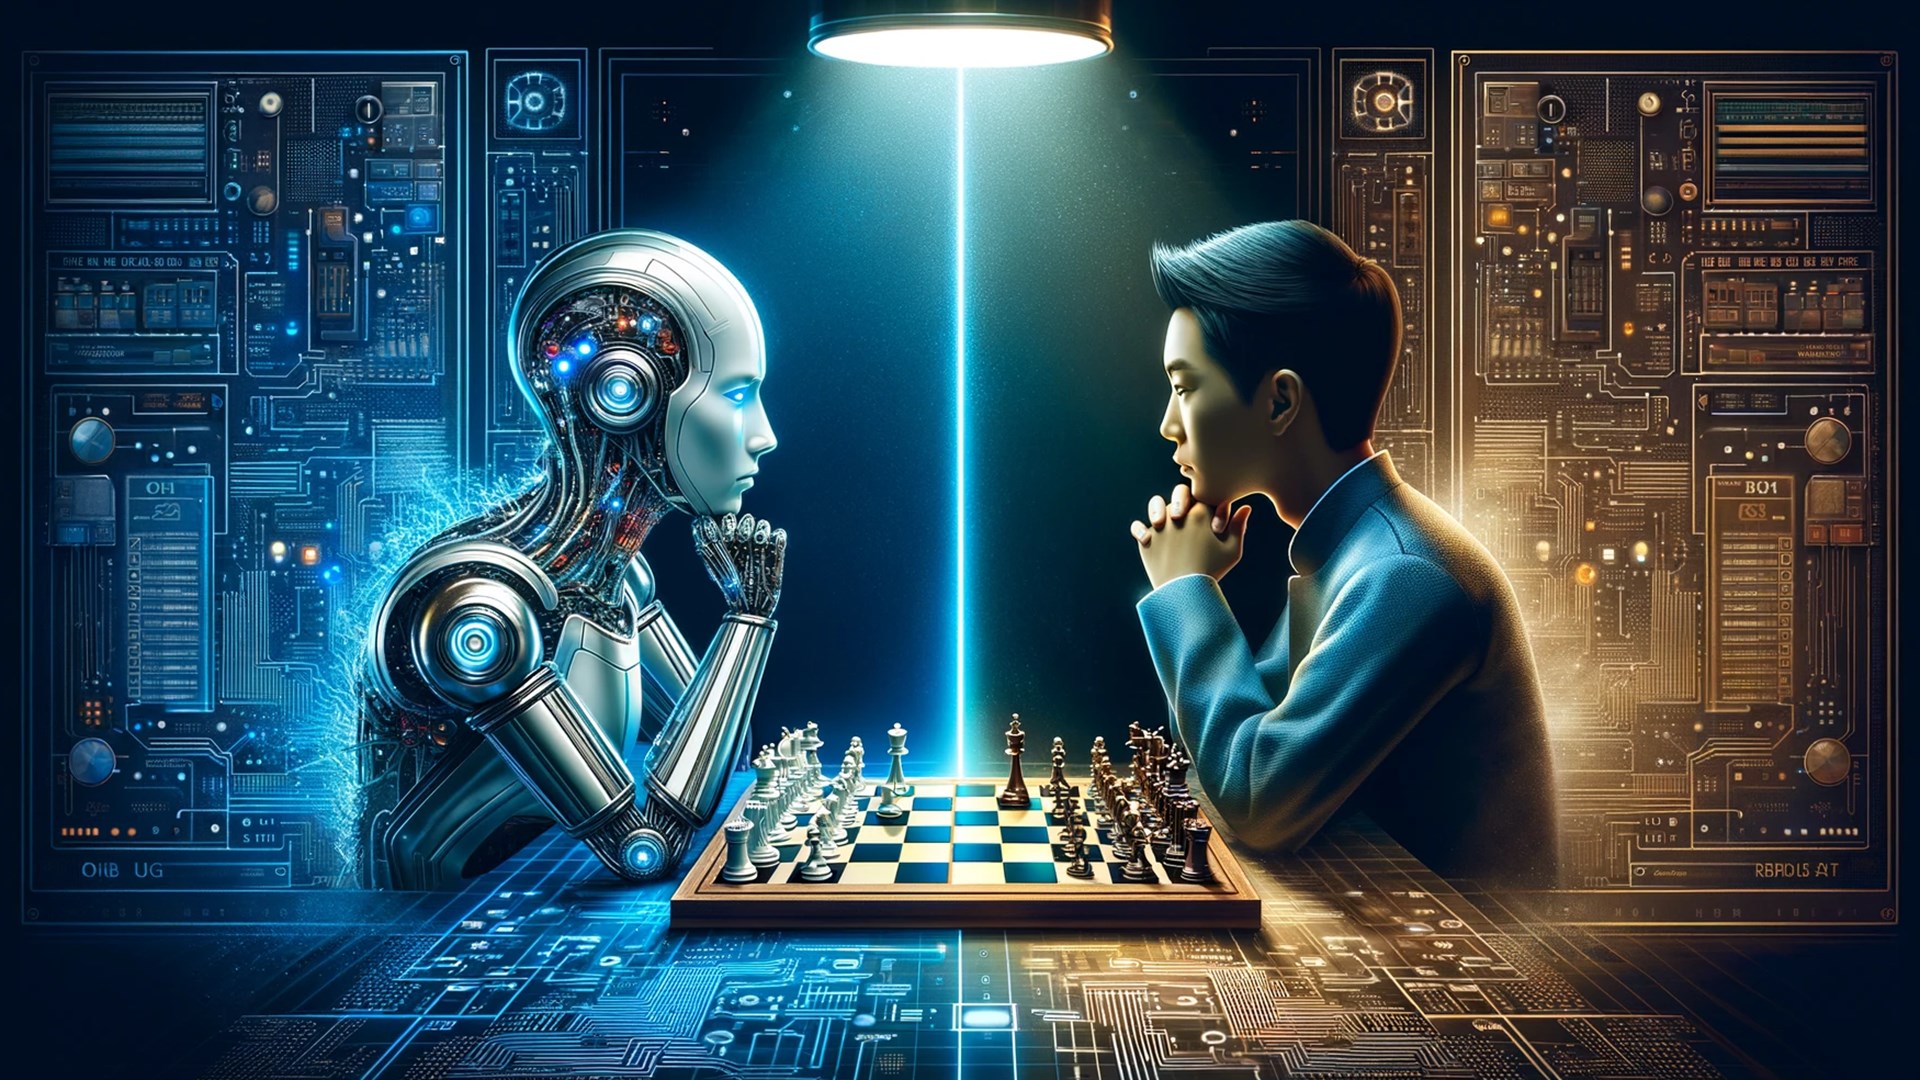 Buy Fritz - Don't call me a chess bot - Microsoft Store en-AI